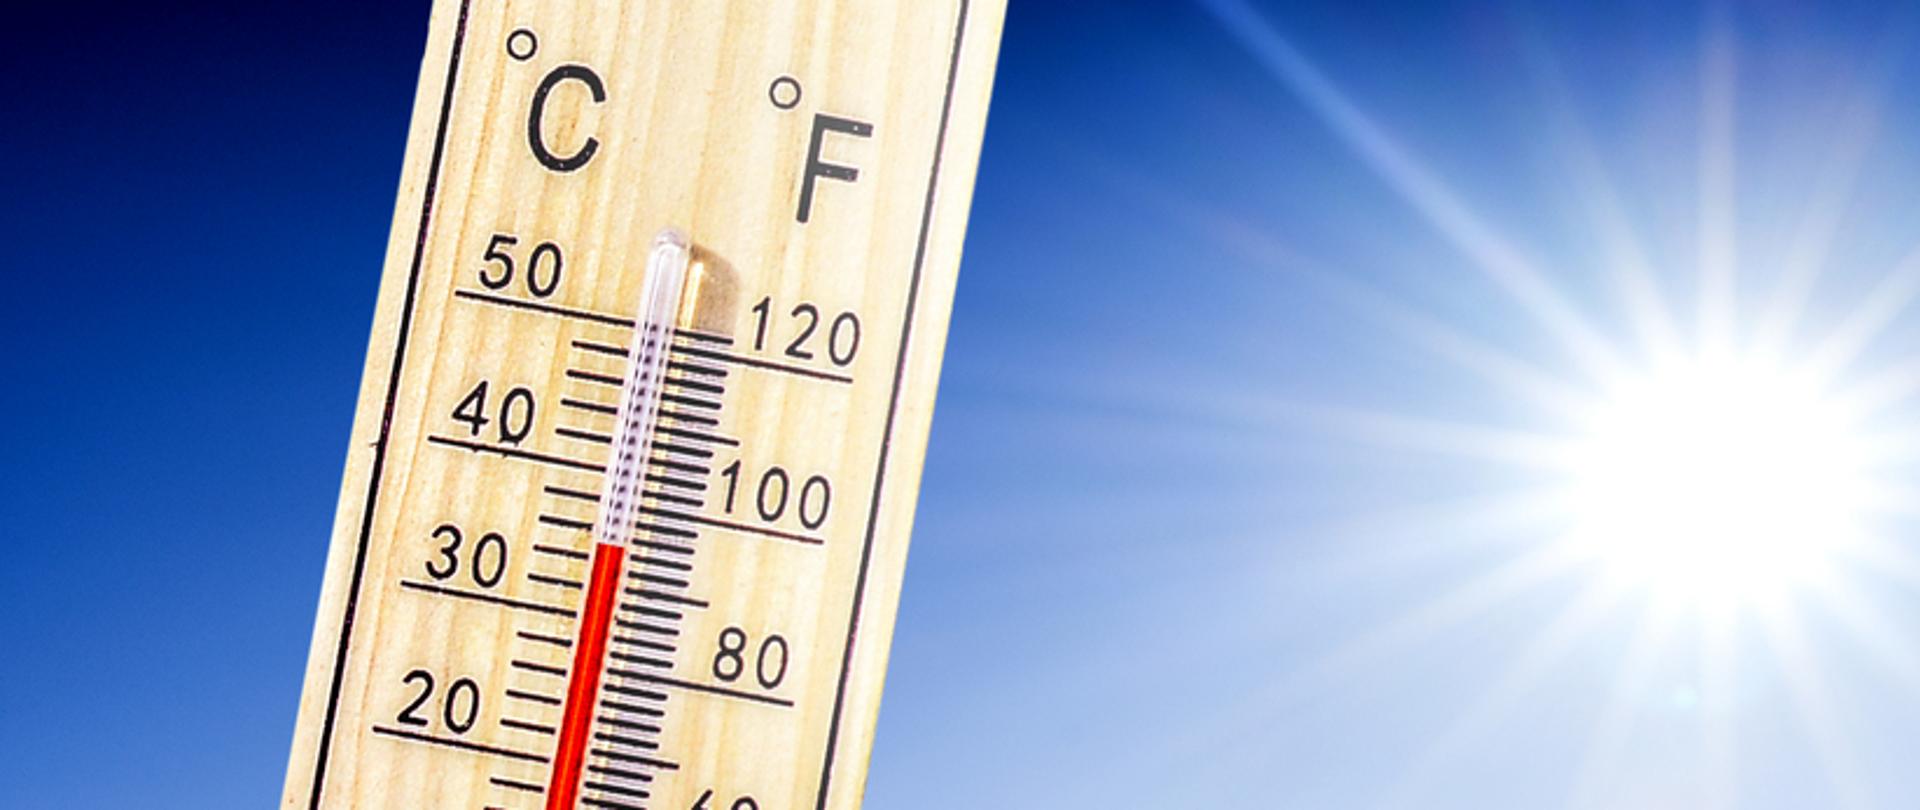 Na zdjęciu znajduje się termometr wskazujący temperaturę powyżej 30 stopni Celsjusza. W tle słońce i błękitne niebo. 